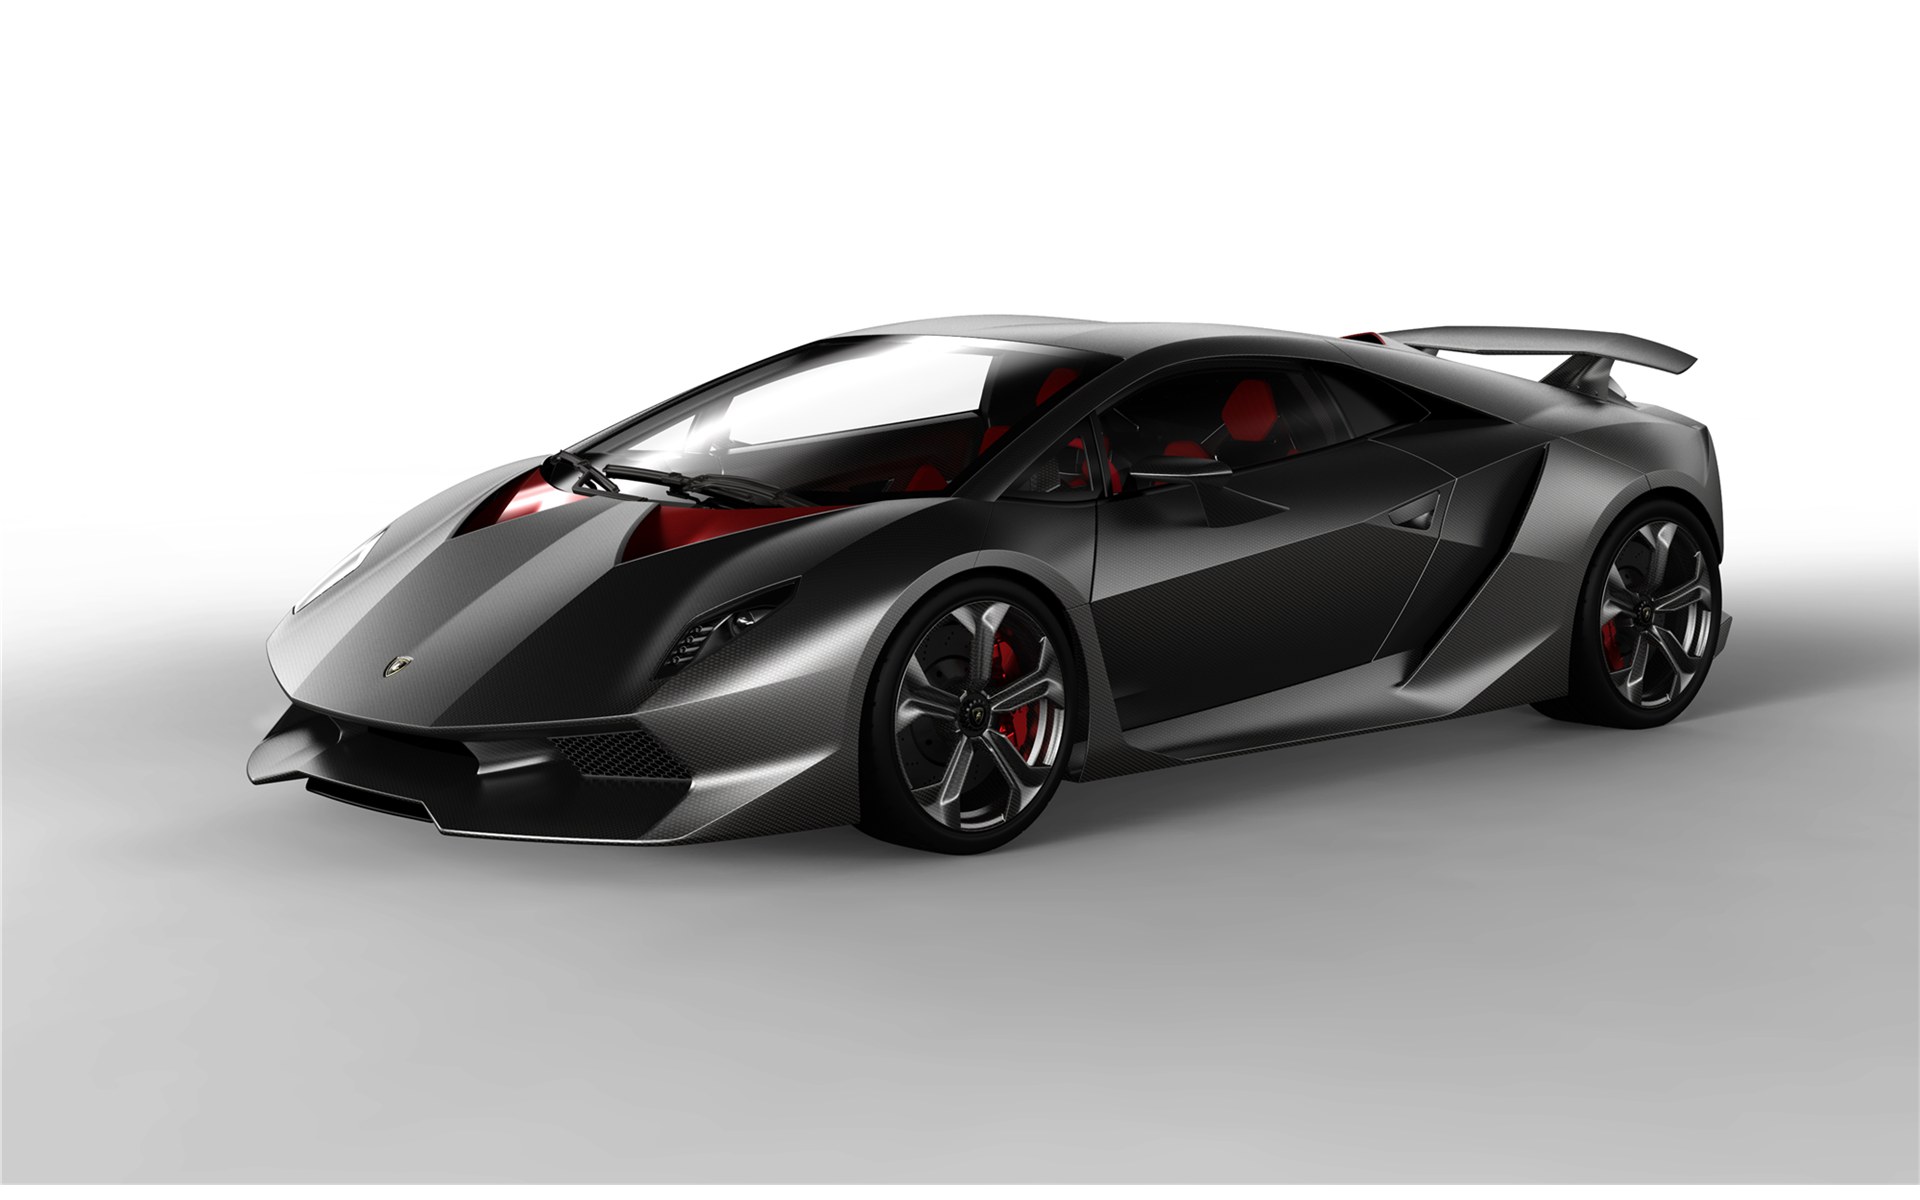 Lamborghini-Sesto-Elemento-Concept-2010-widescreen-06.jpg